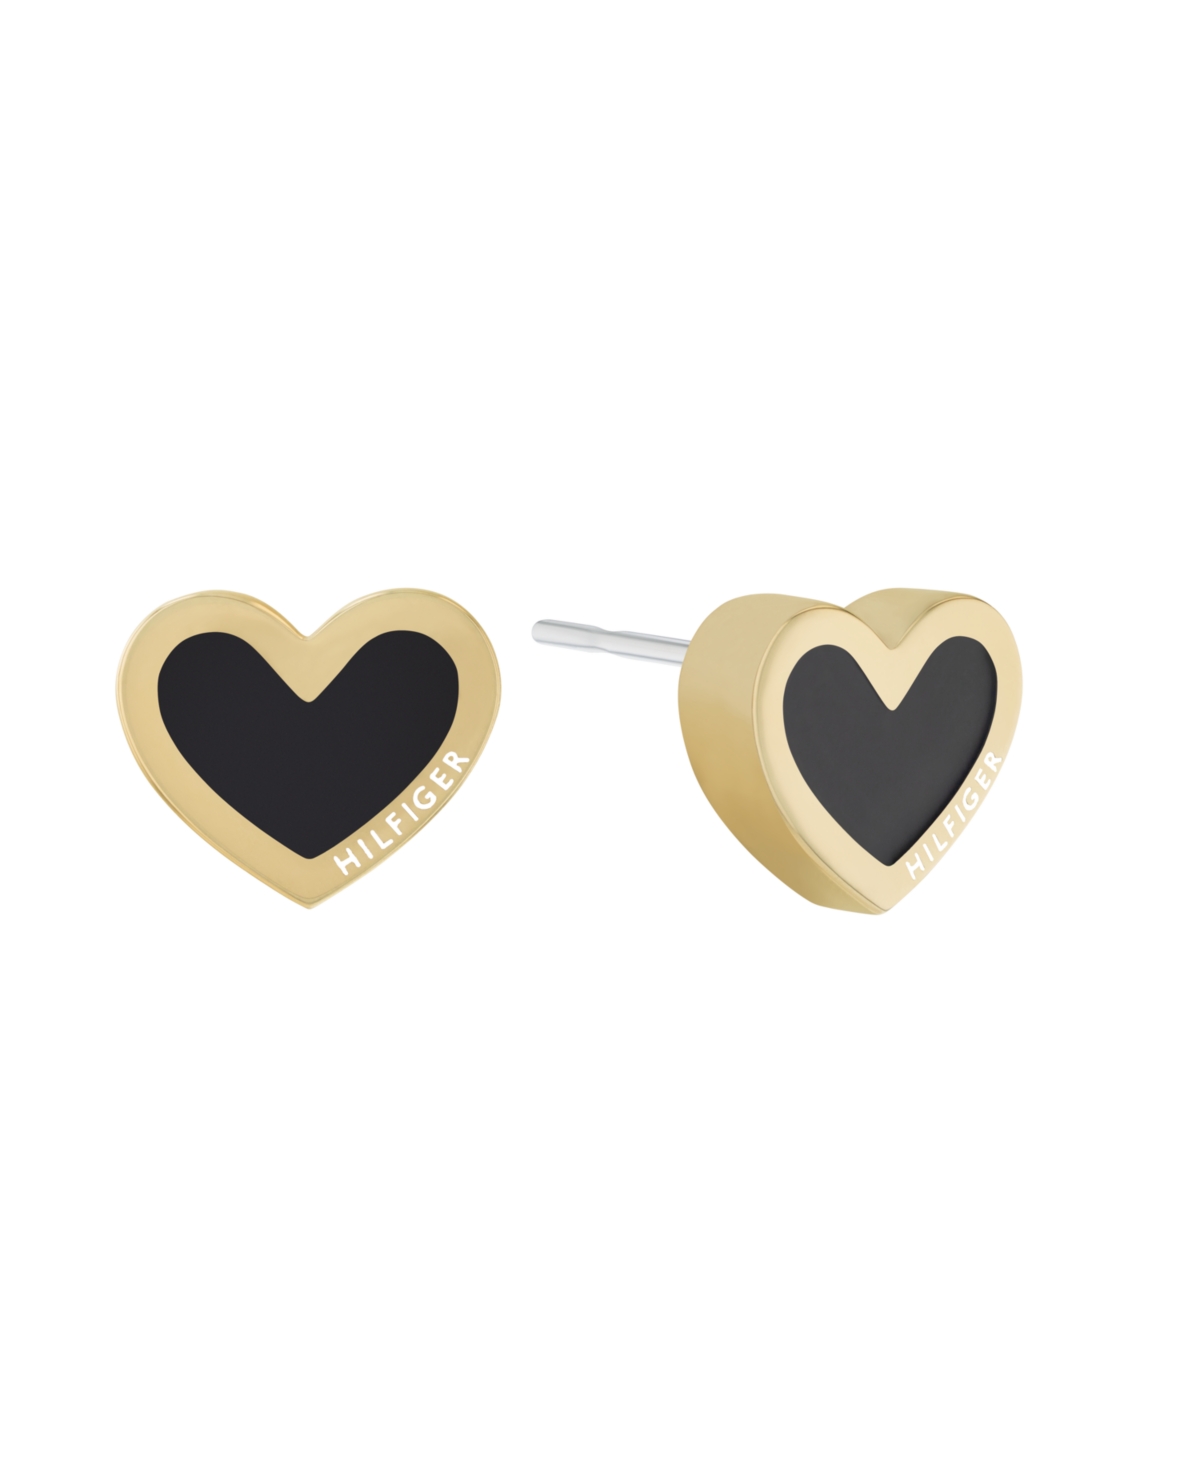 Black Enamel Heart Earrings in 18K Gold Plated - Gold